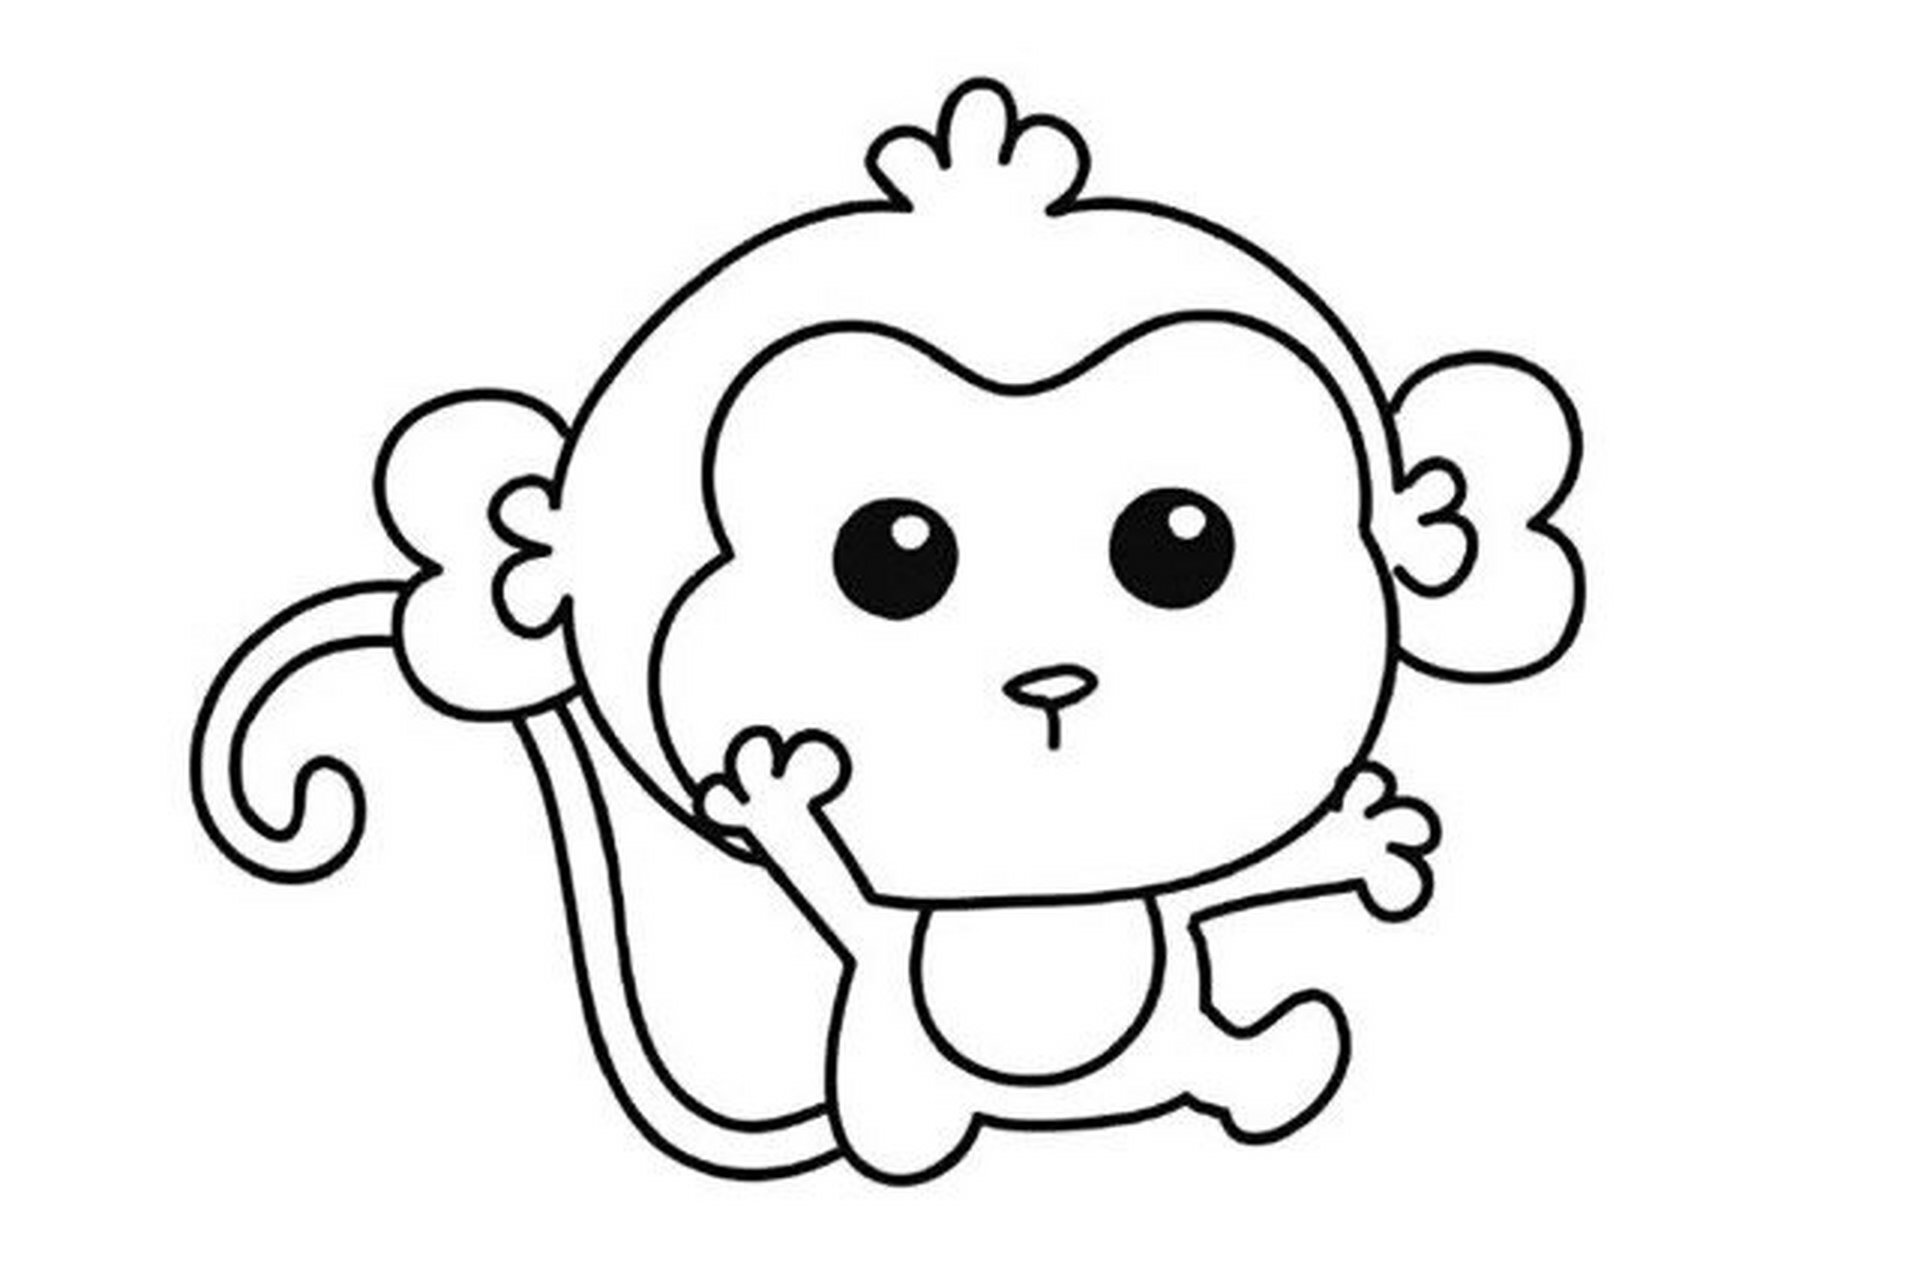 简笔画素材/儿童画 小猴子美术,简单的结构线条,组合起来就可以啦画 